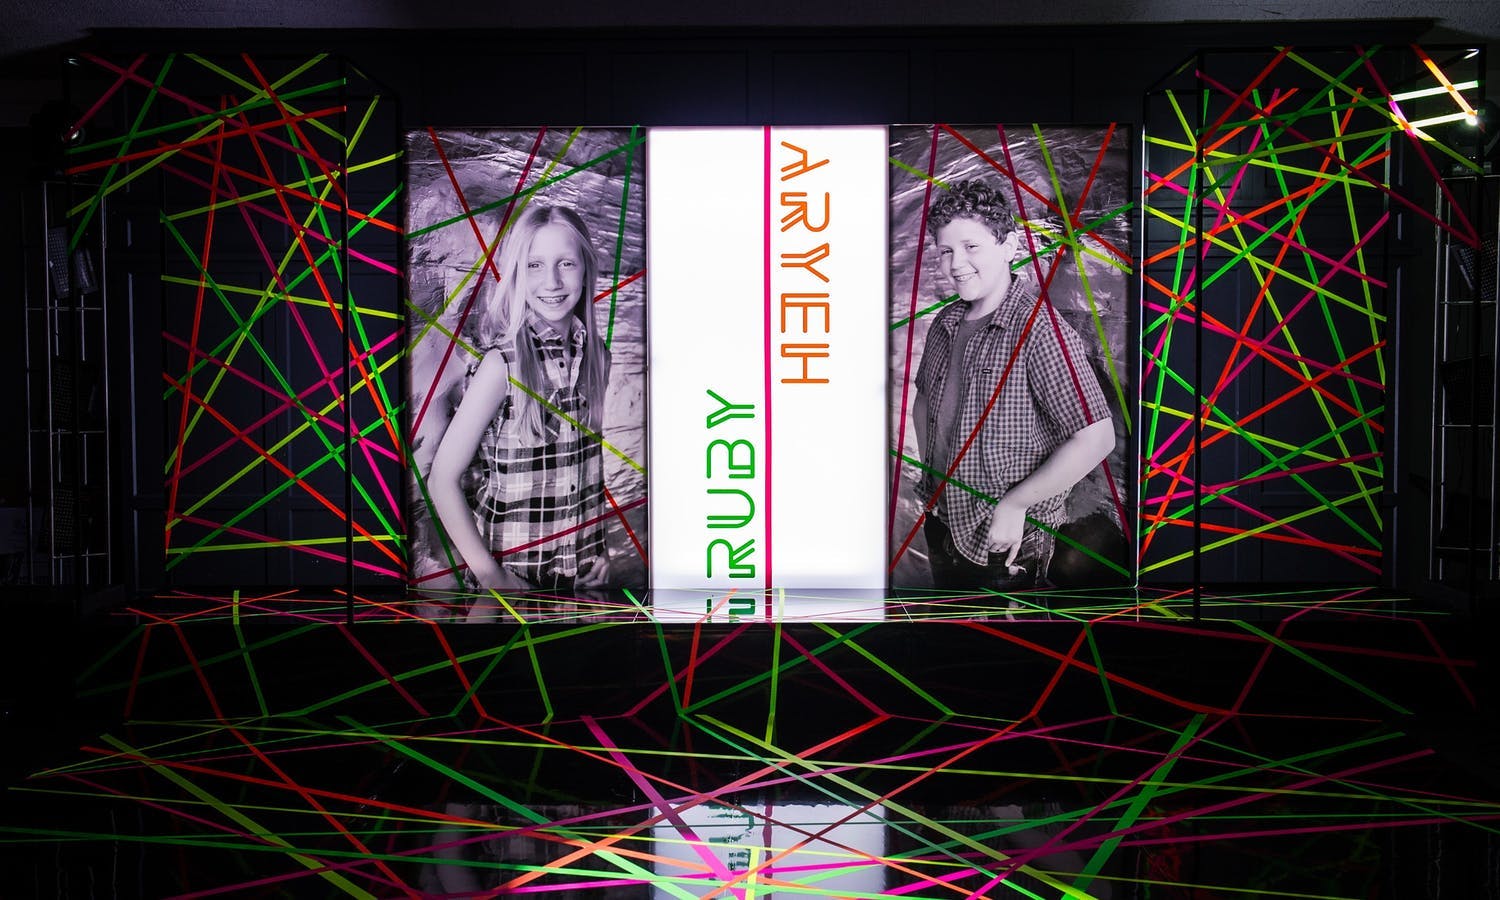 Neon Mitzvah Party With Laser Glow Dance Floor | PartySlate